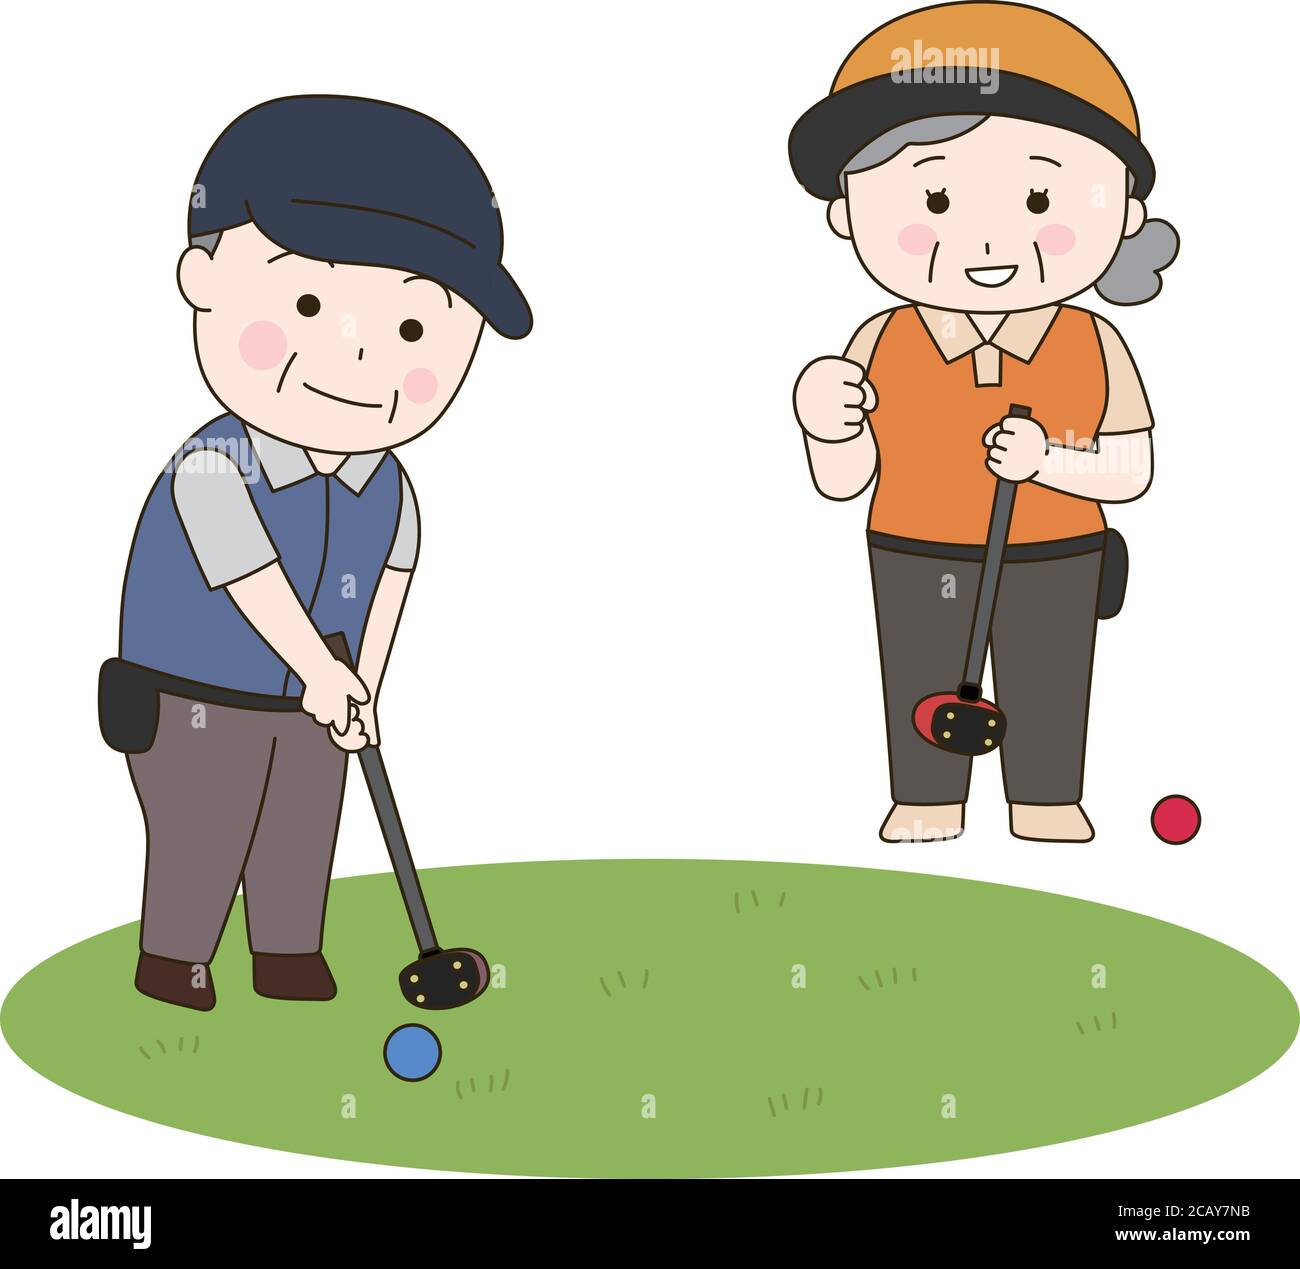 Japaner spielen Park Golf. Vektorgrafik isoliert auf weißem Hintergrund. Stock Vektor